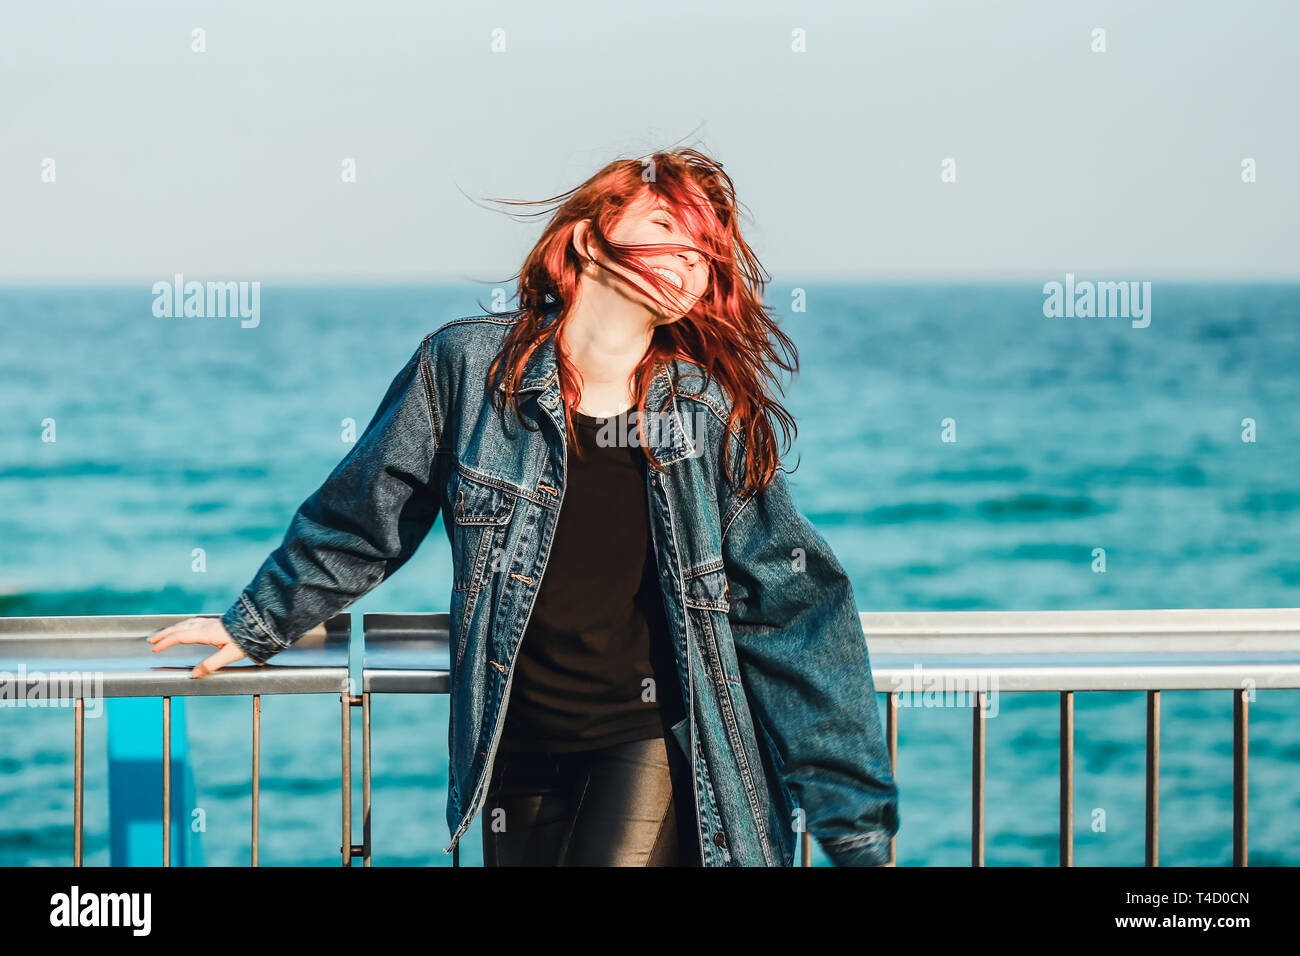 Belle jeune fille rousse avec un jean jacket marche à côté de l'eau de mer et se sentir heureux et libre Banque D'Images